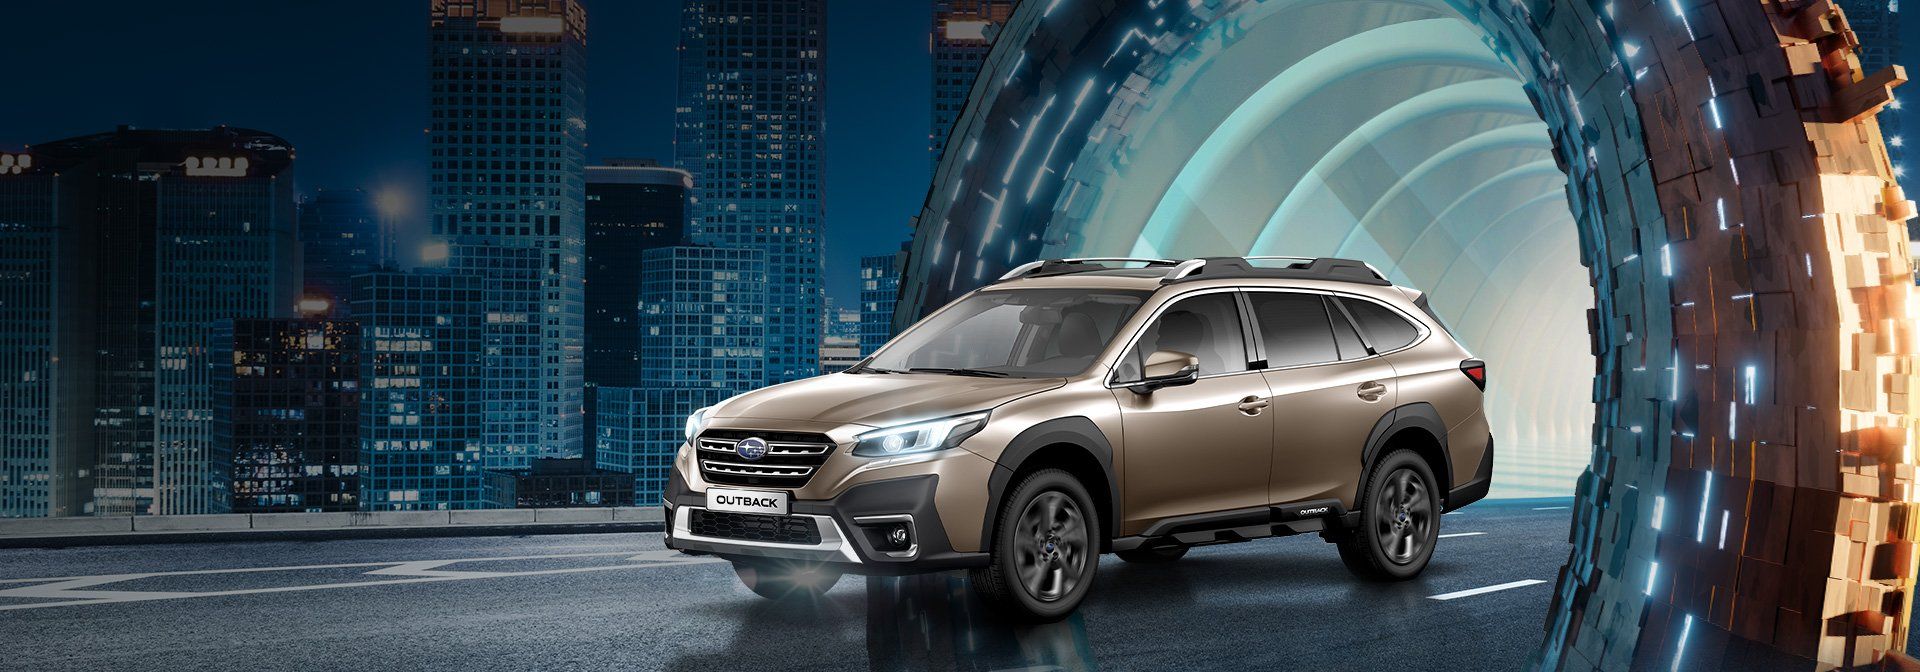 В России объявлен прием заказов на абсолютно новый Subaru Outback шестого поколения 